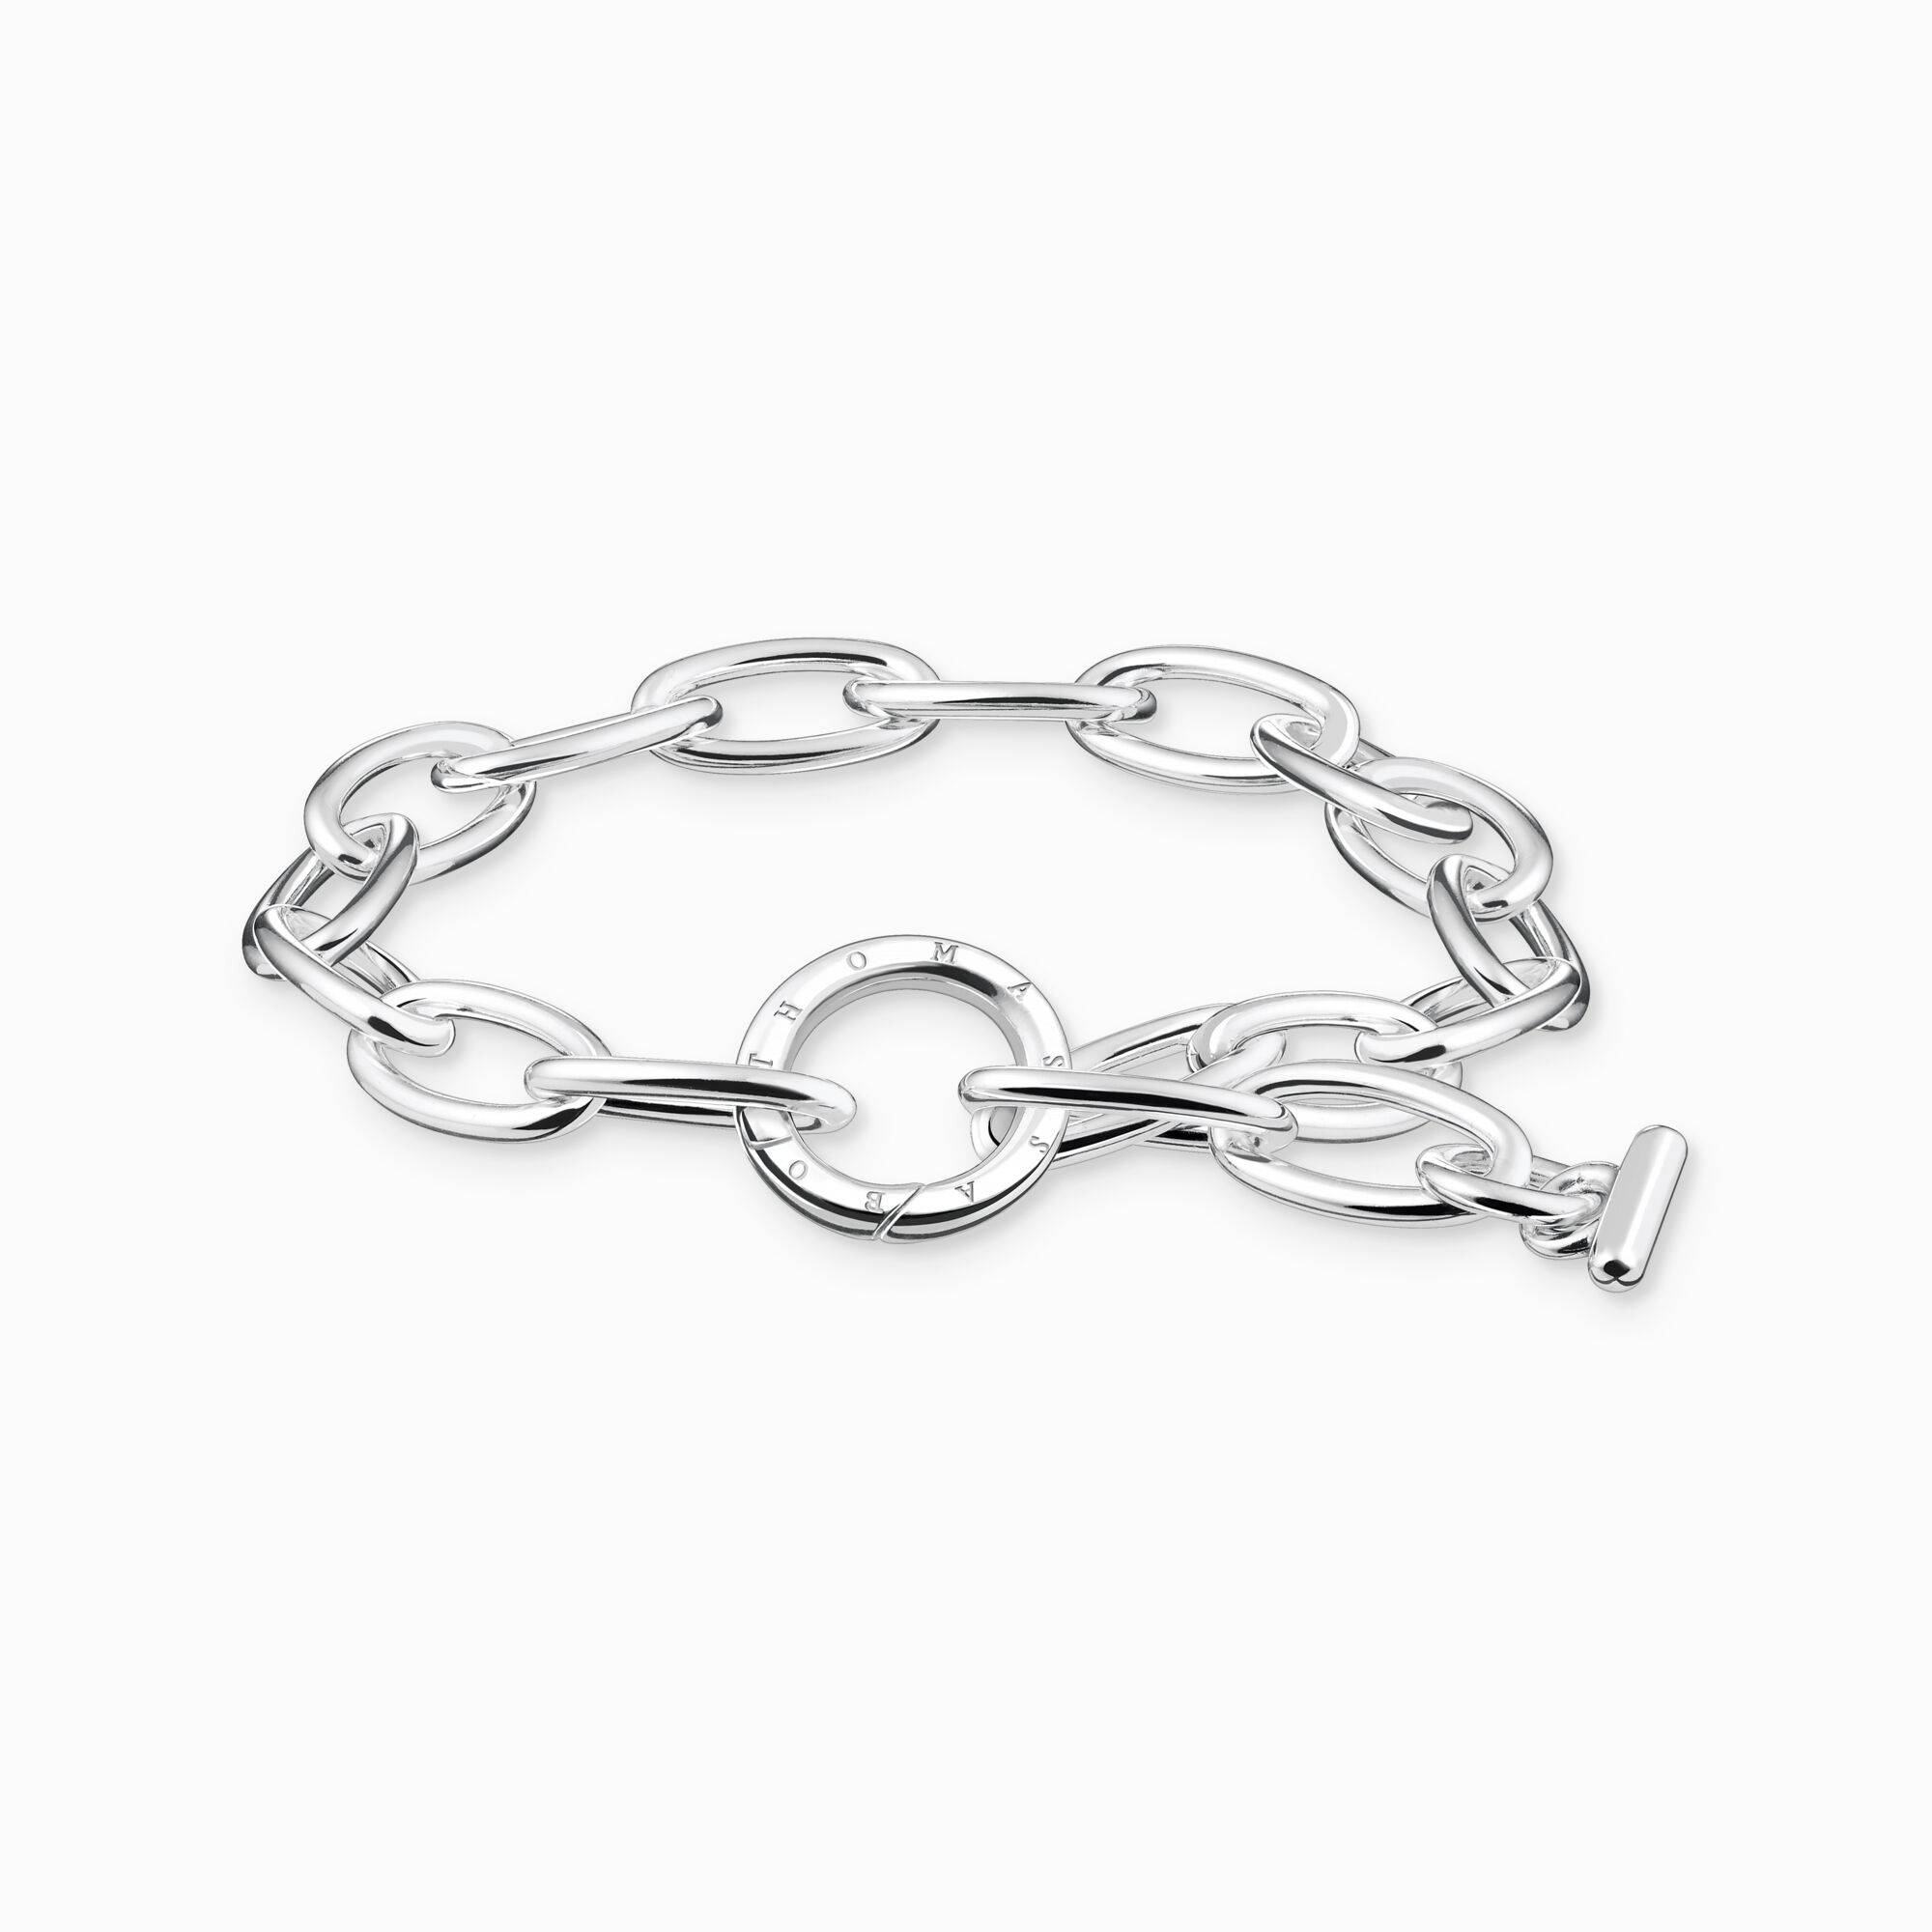 Bracelet for women in anchor chain design – THOMAS SABO